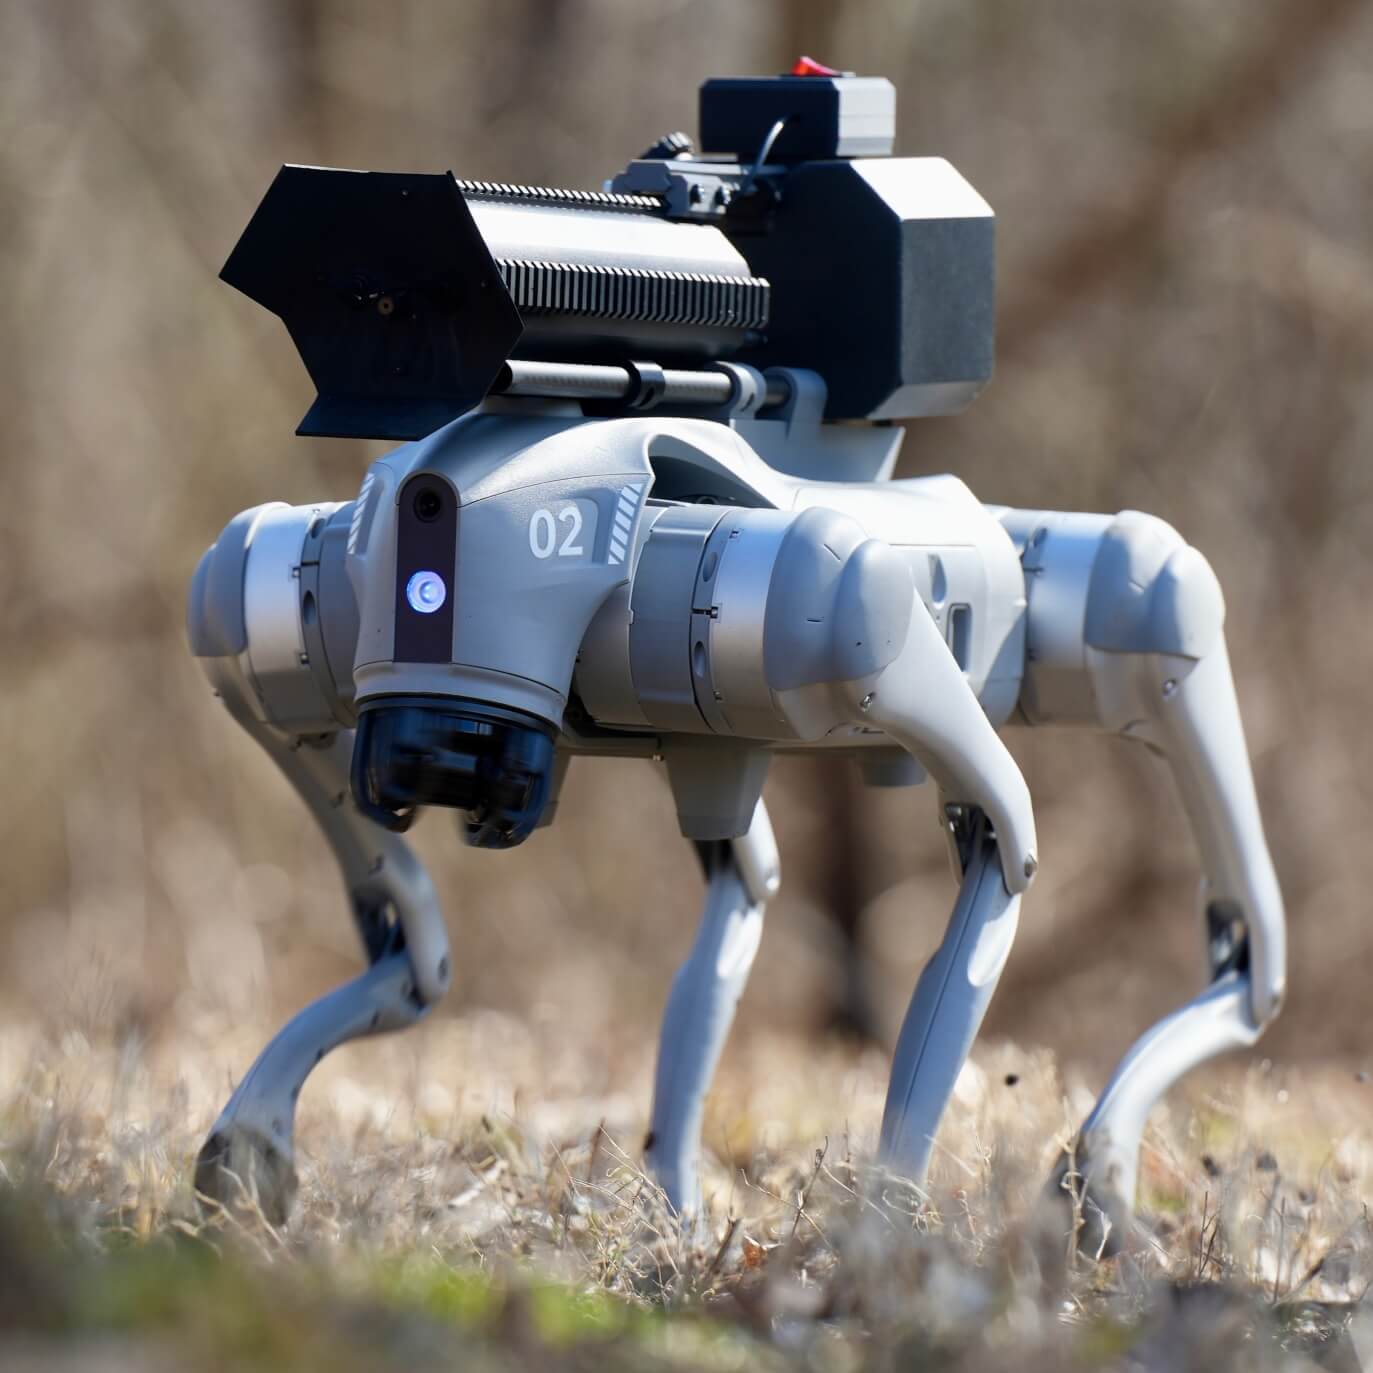 Ακόμα ένα επεισόδιο του Black Mirror γίνεται πραγματικότητα: Εταιρεία έφτιαξε σκύλο-ρομπότ που πετάει φλόγες